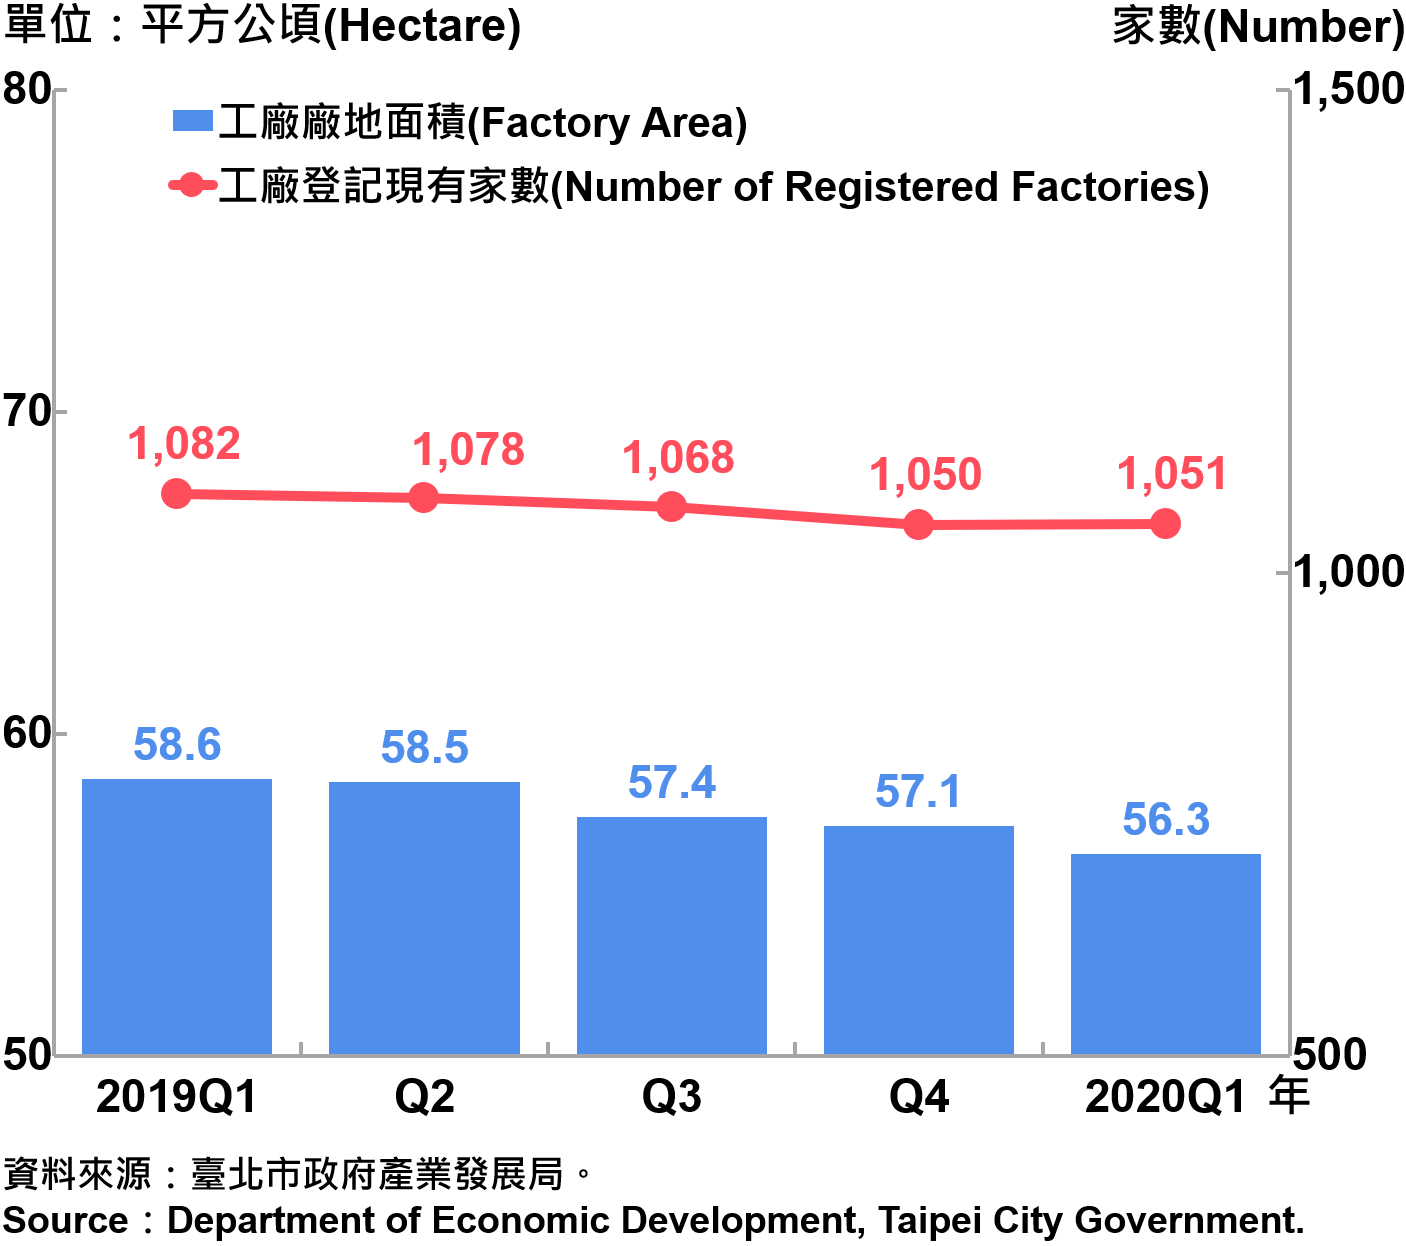 臺北市工廠登記家數及廠地面積—2020Q1 Number of Factories Registered and Factory Lands in Taipei—2020Q1